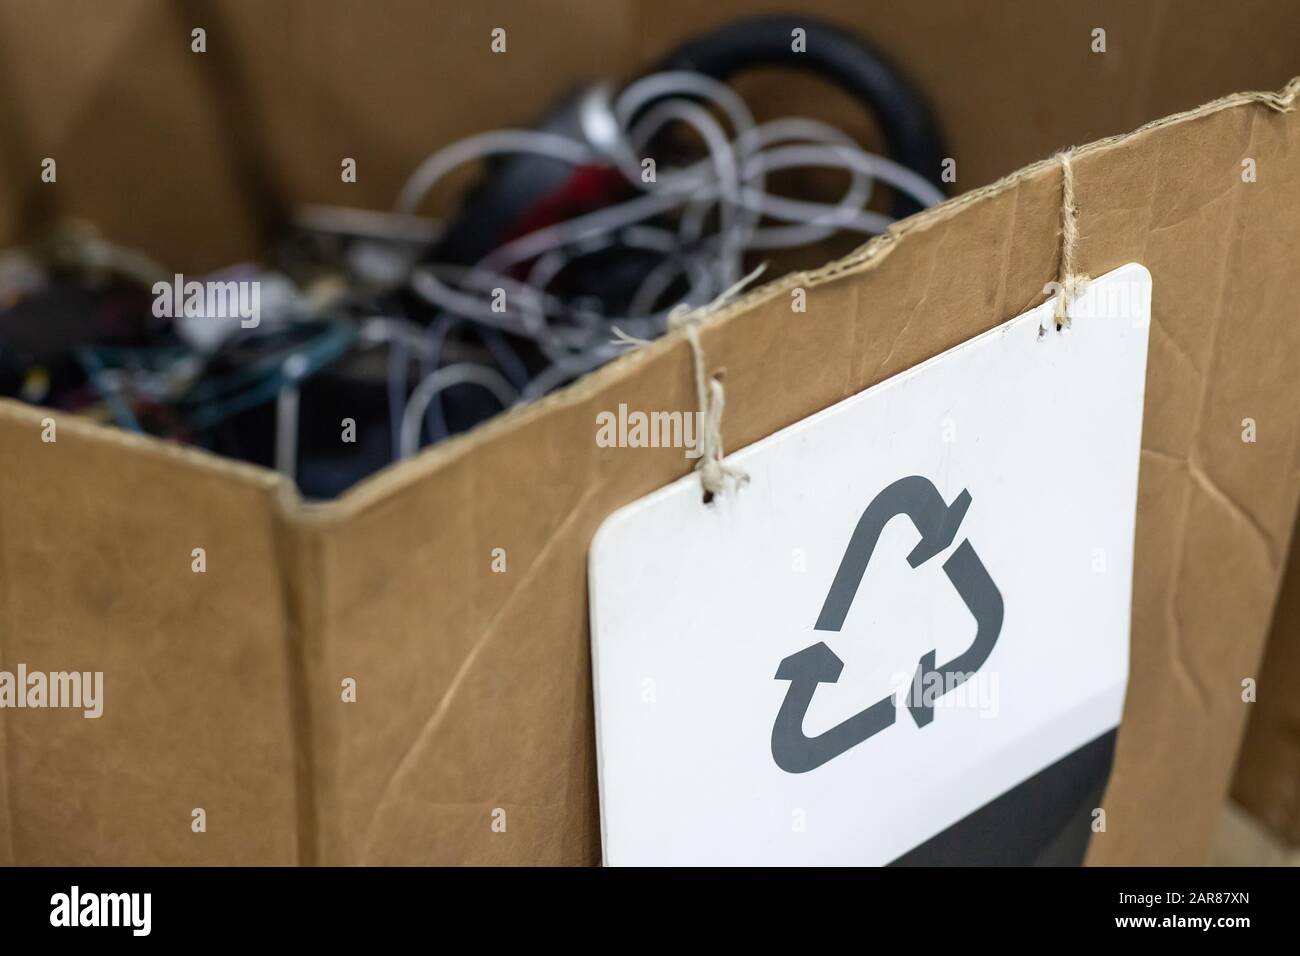 Karton mit Recycling-Schild für Papierblätter. Sammelstelle für  ausrangierte kaputte Haushaltsgeräte. Wiederverwendbare Abfälle und  Abfallrettung Stockfotografie - Alamy